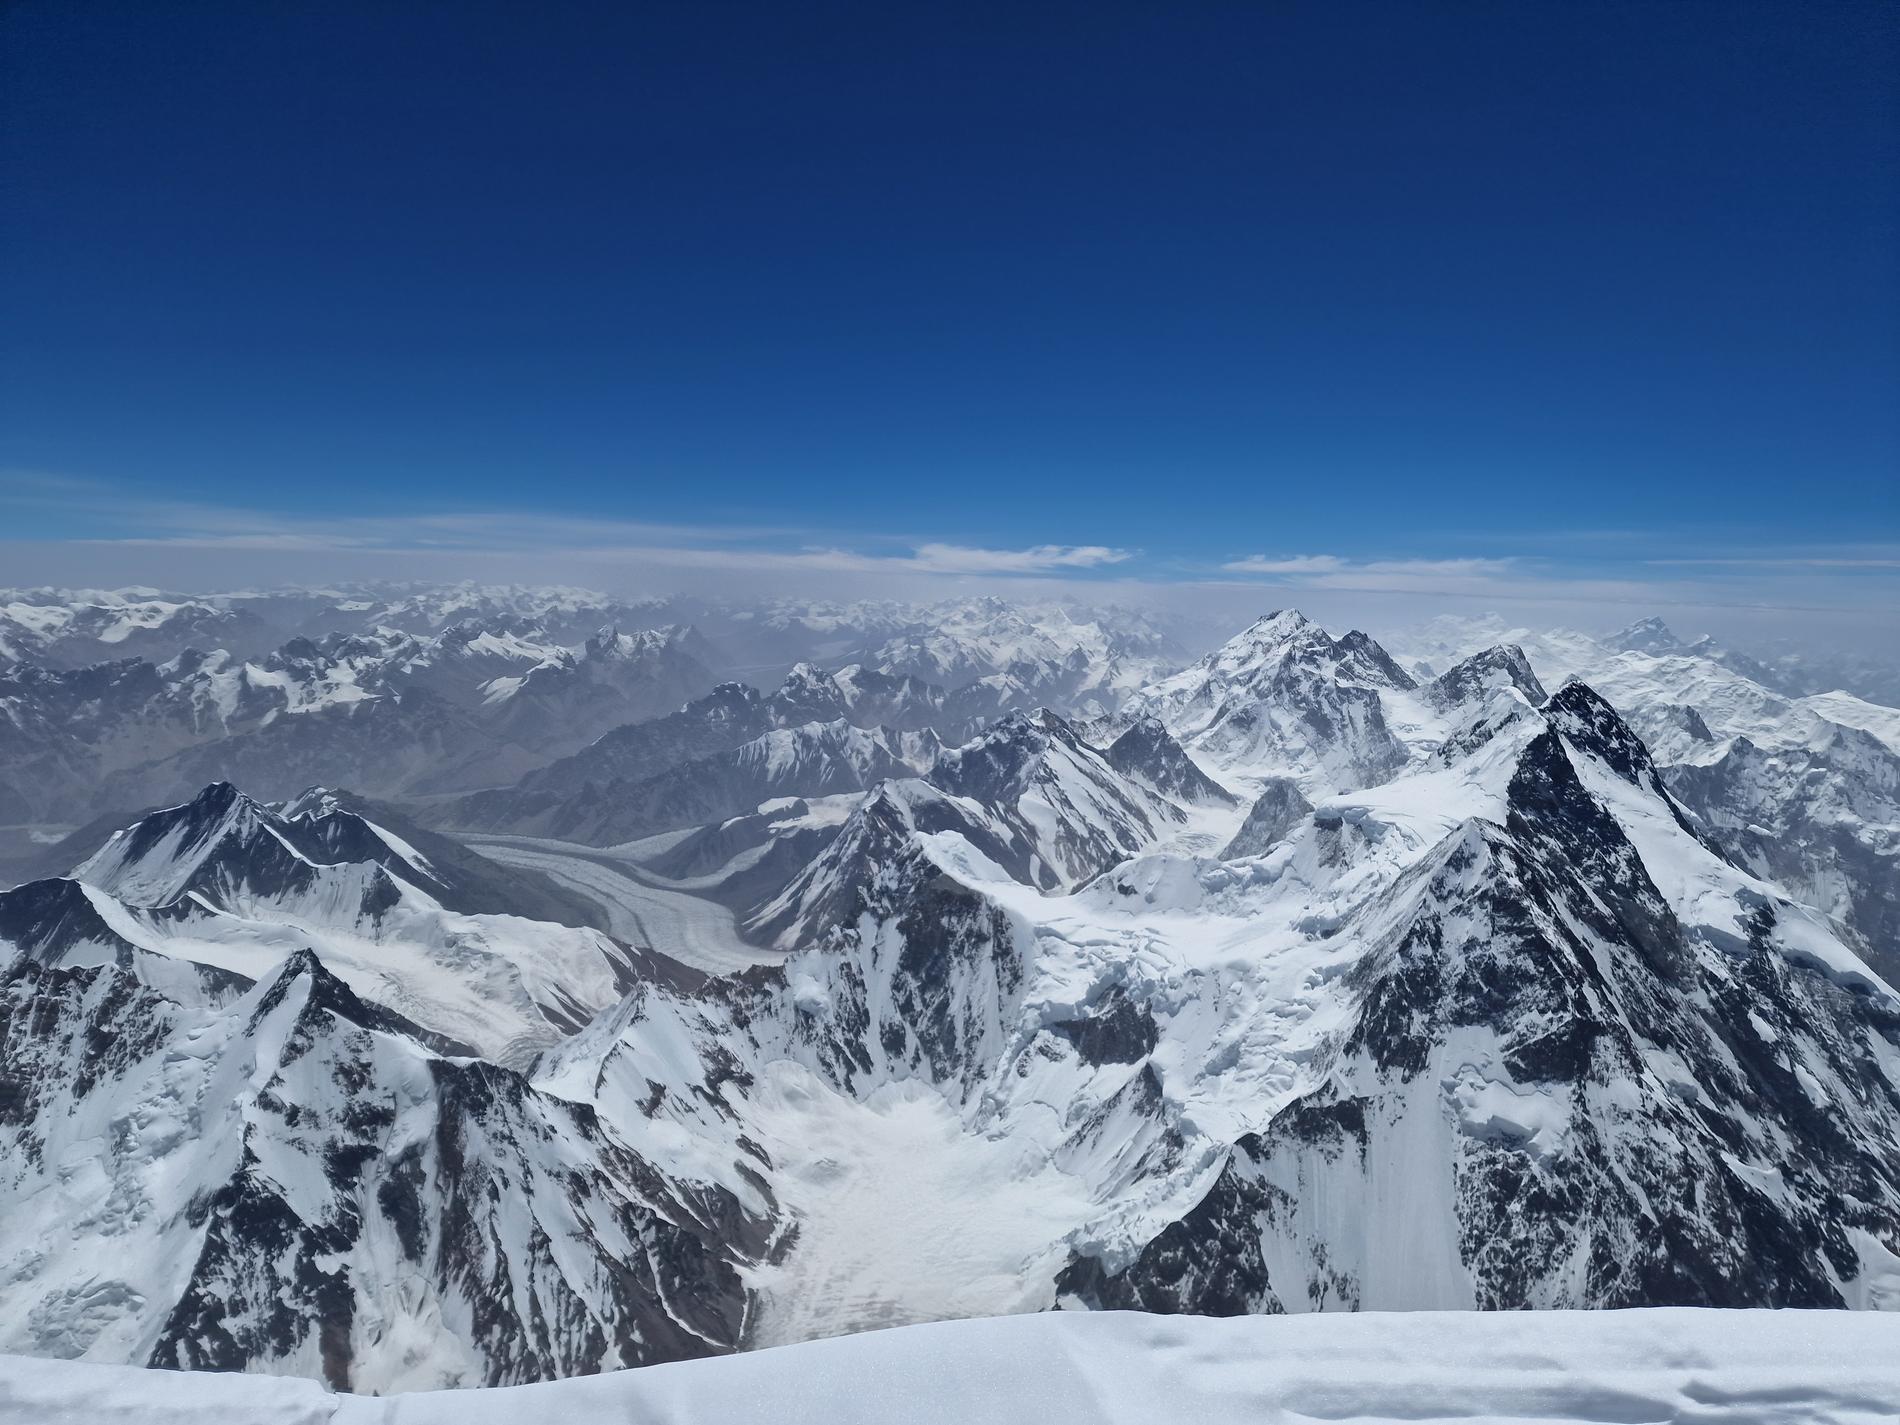 K2 i Pakistan är världens näst högsta berg, 8 611 meter över havet. Det är avlägset, brant, tekniskt svårt att ta sig upp för och det är stor risk för stenras och laviner. 